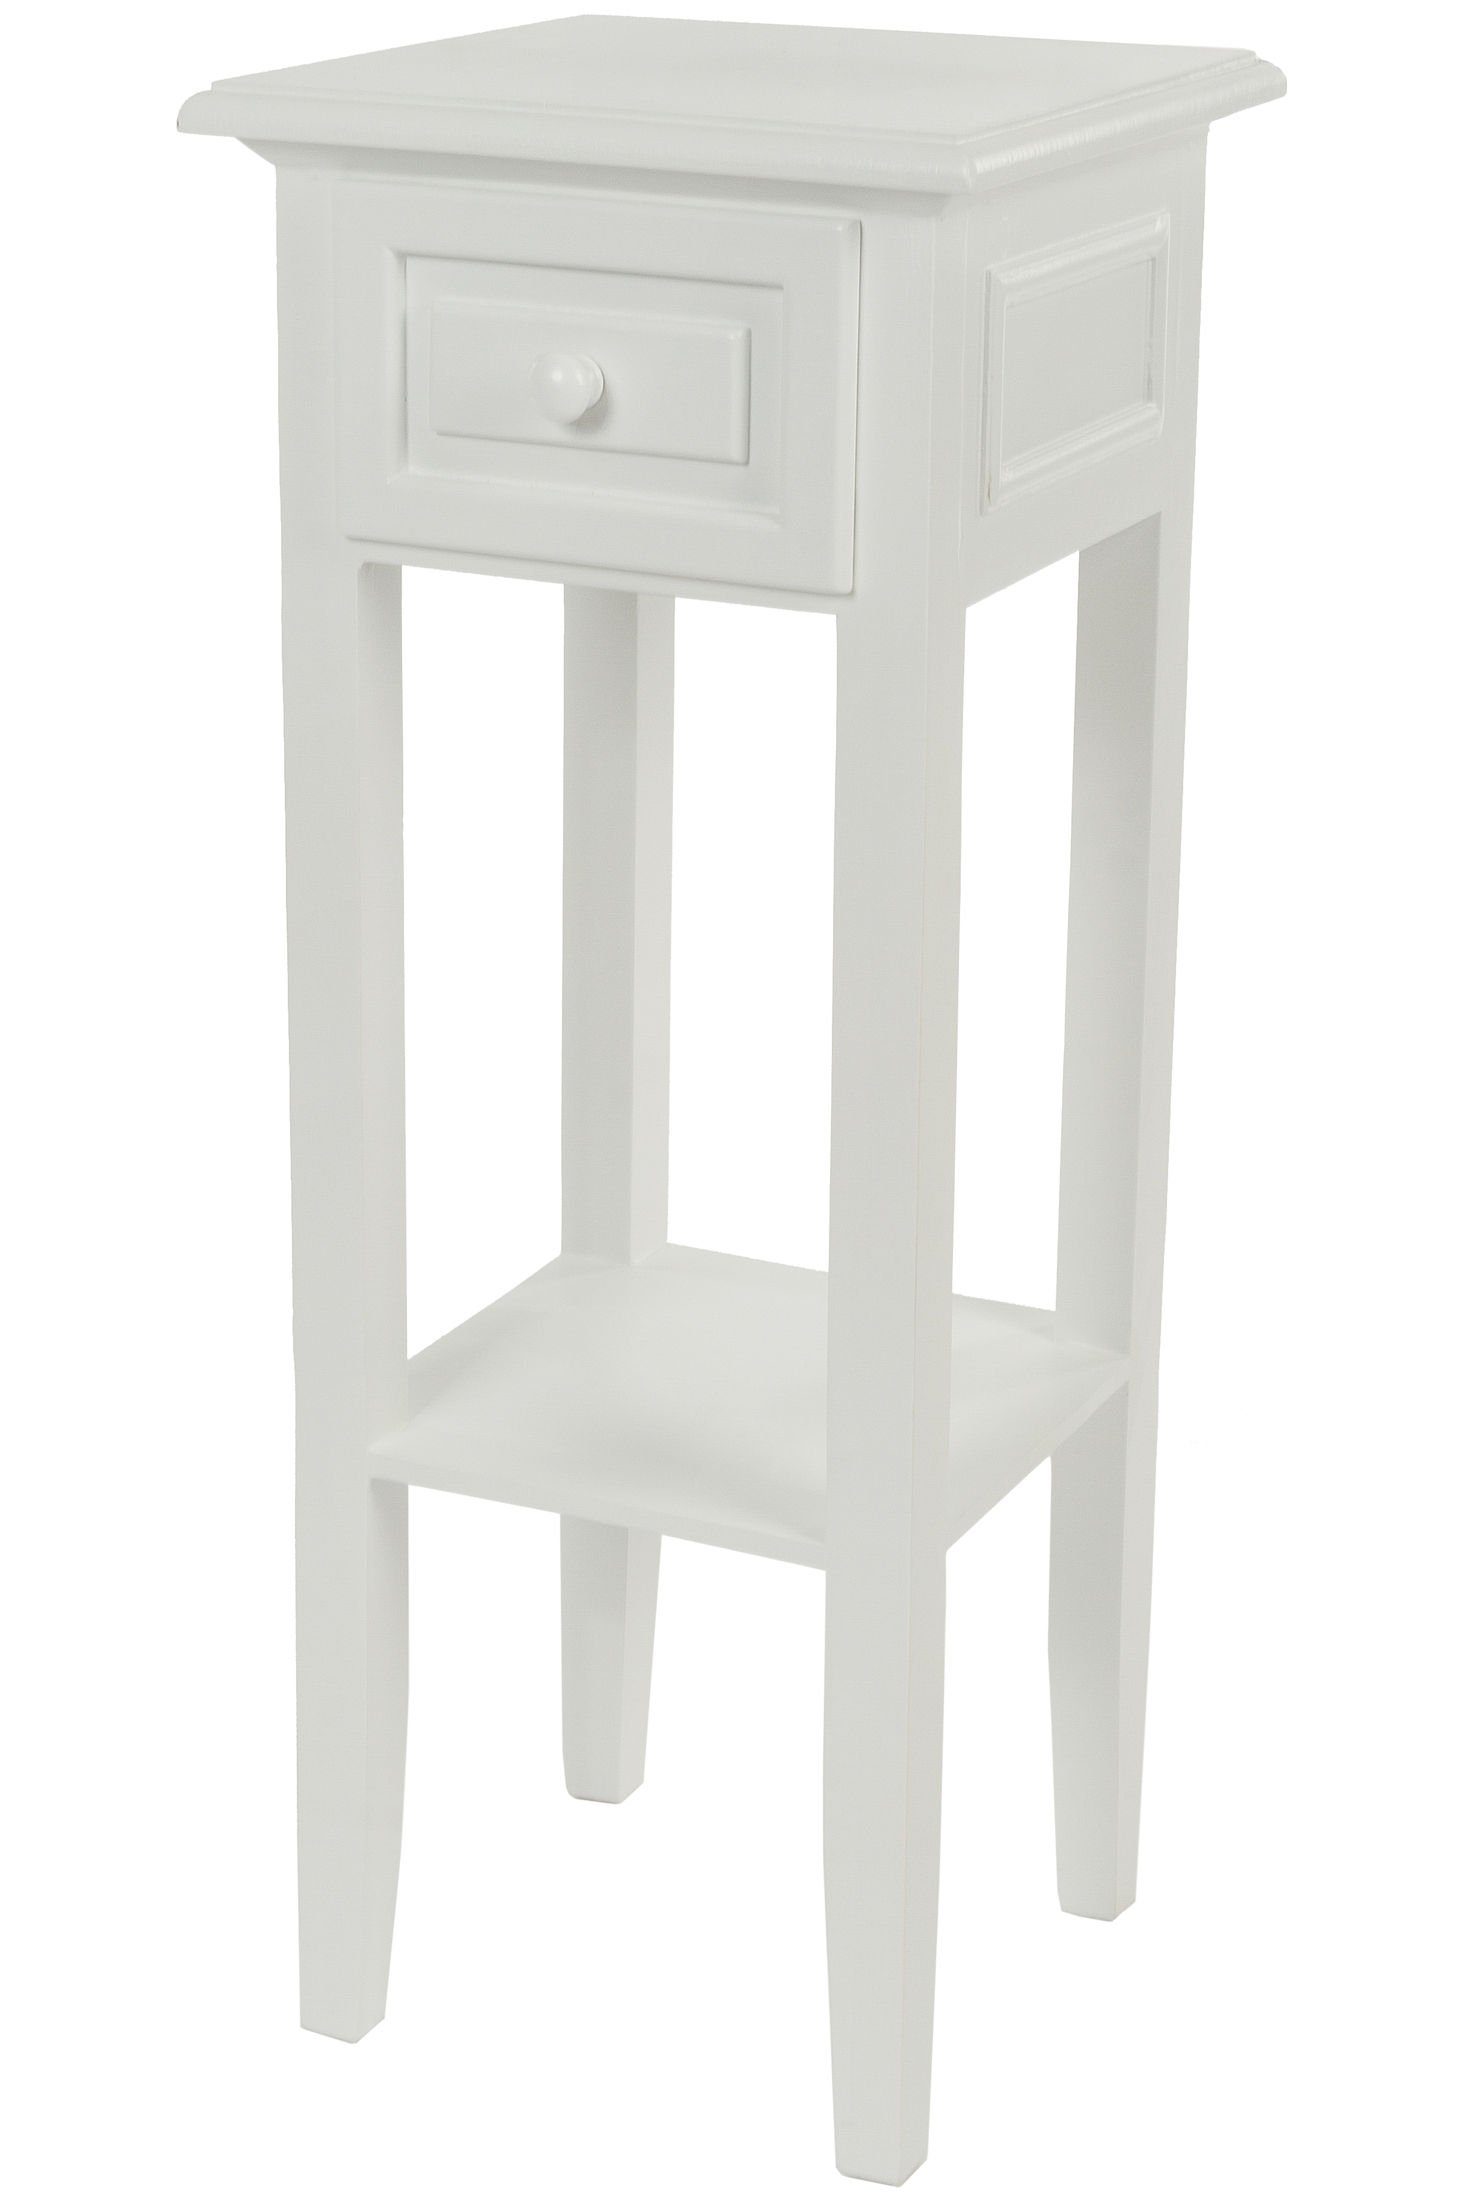 Spetebo Beistelltisch Holz Telefontisch weiß - 67 x 25 cm, Beistelltisch im Landhaus Stil